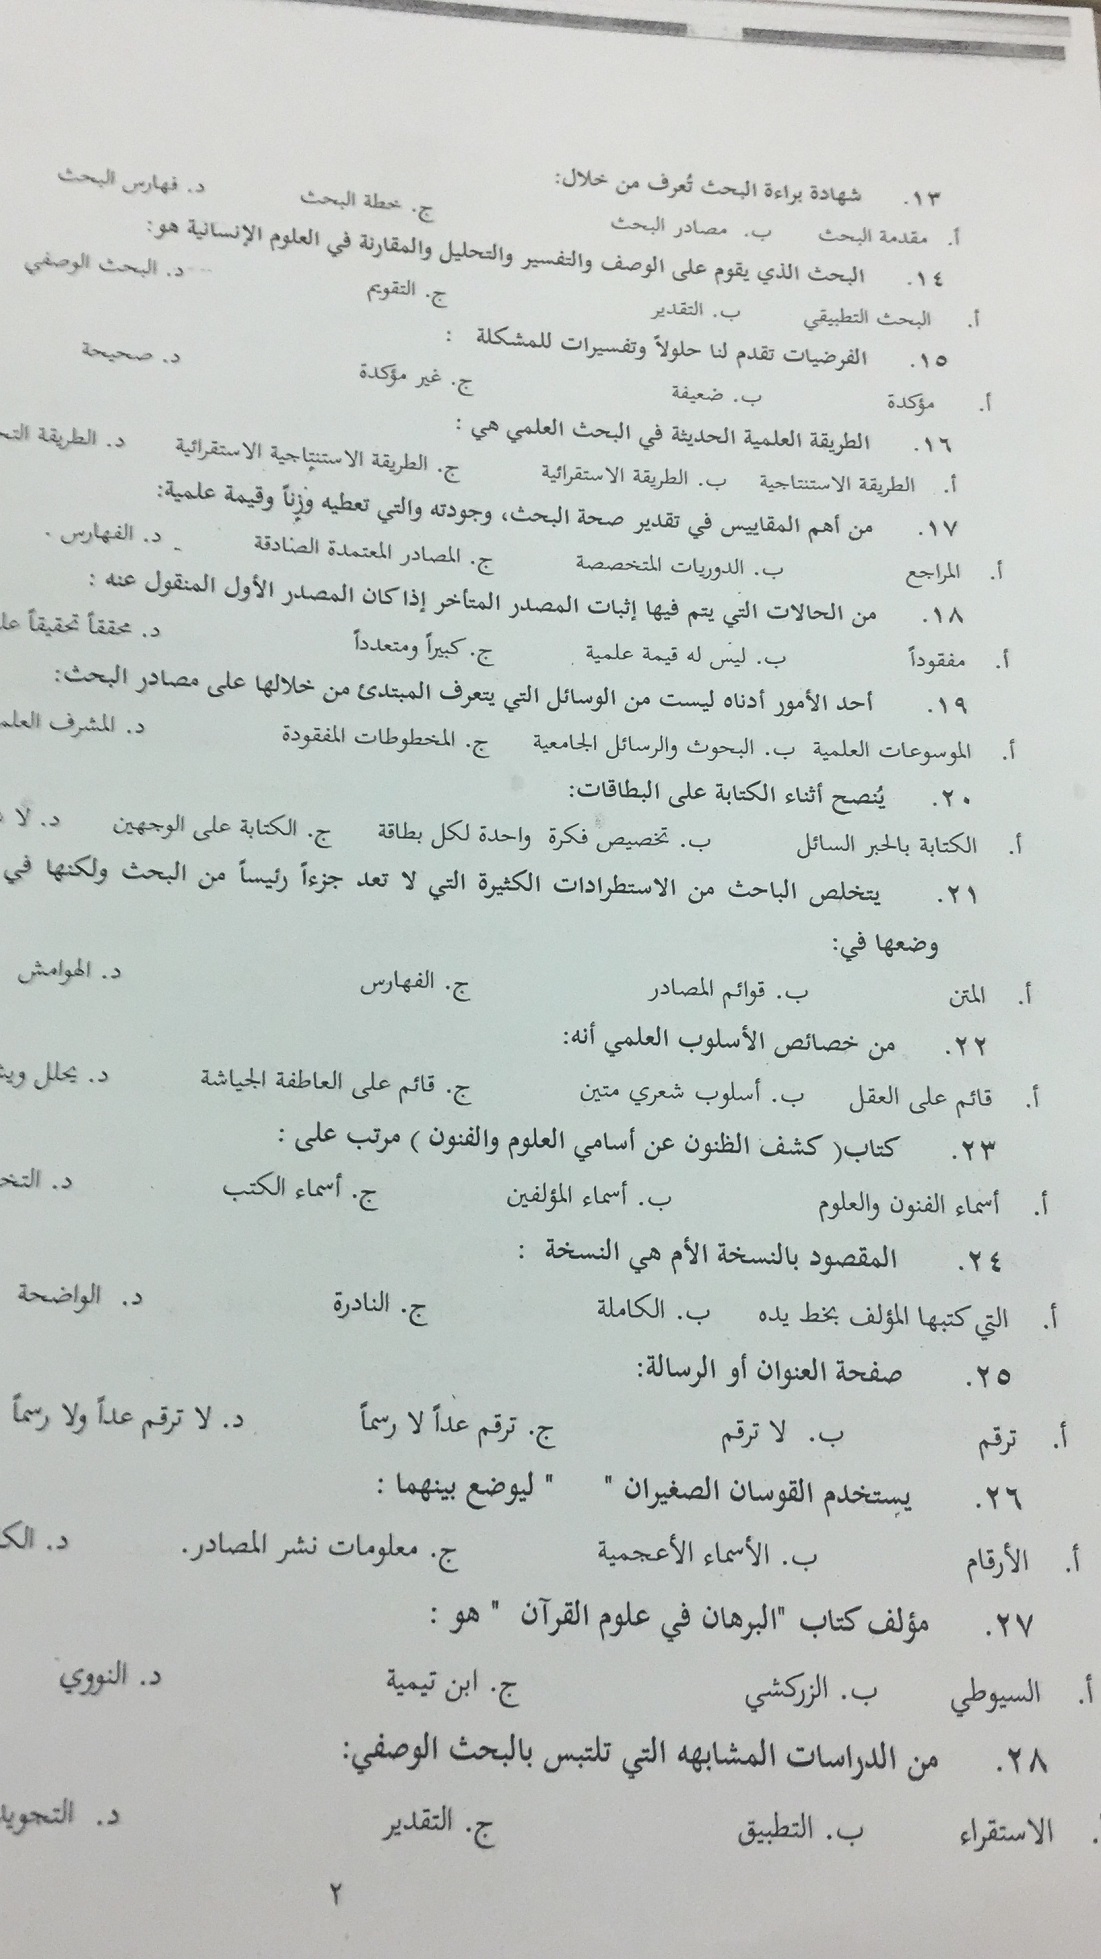 مناهج البحث في العلوم الاسلامية الفصل الاول 1438